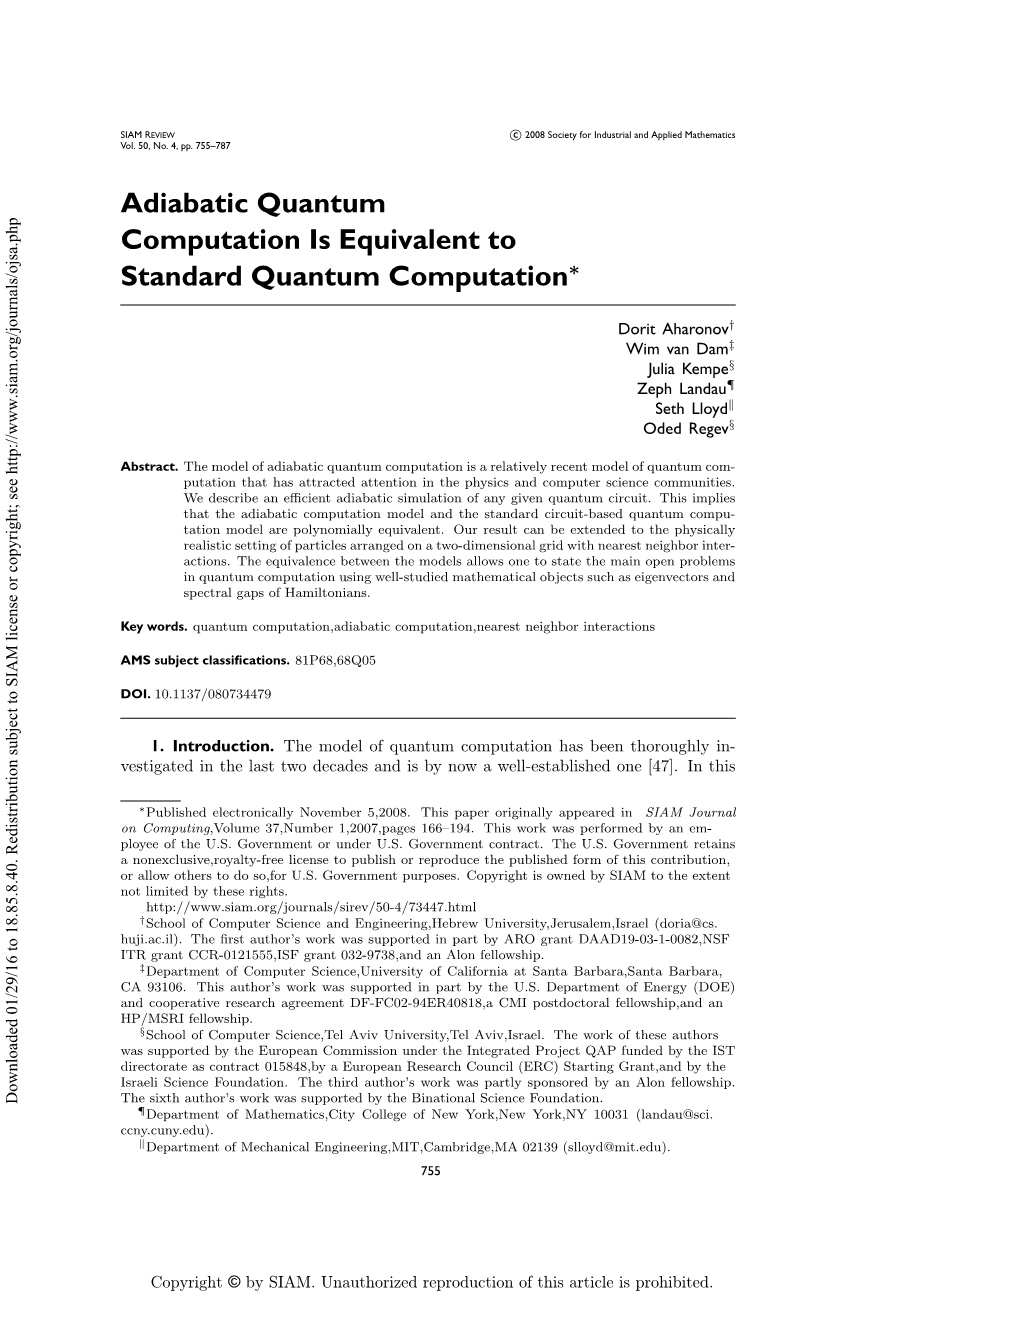 Adiabatic Quantum Computation Is Equivalent To